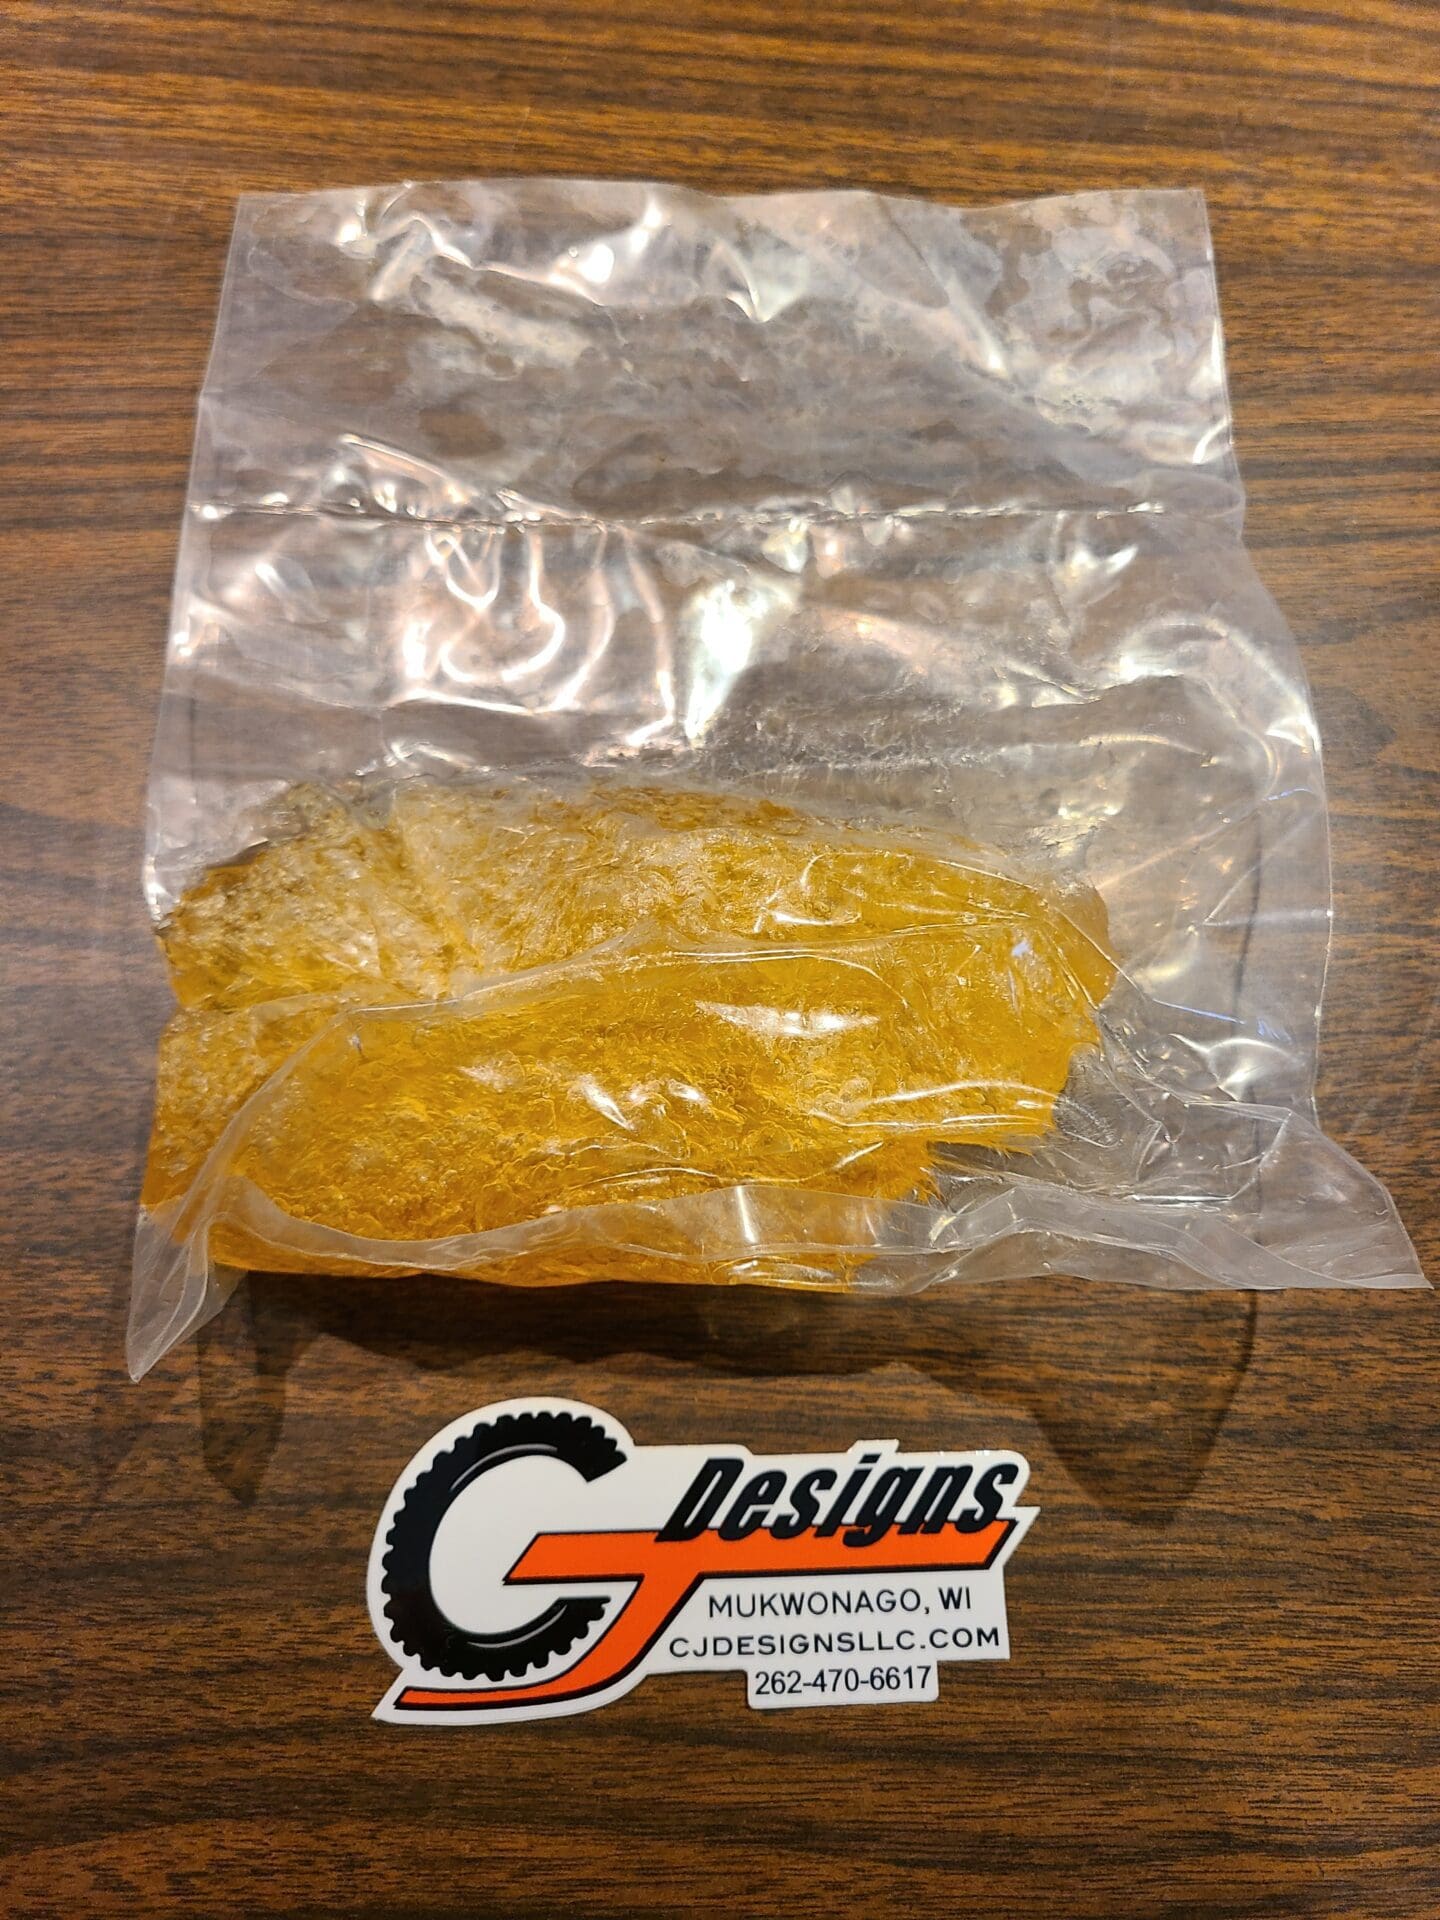 CJ Designs orange part in sealed plastic